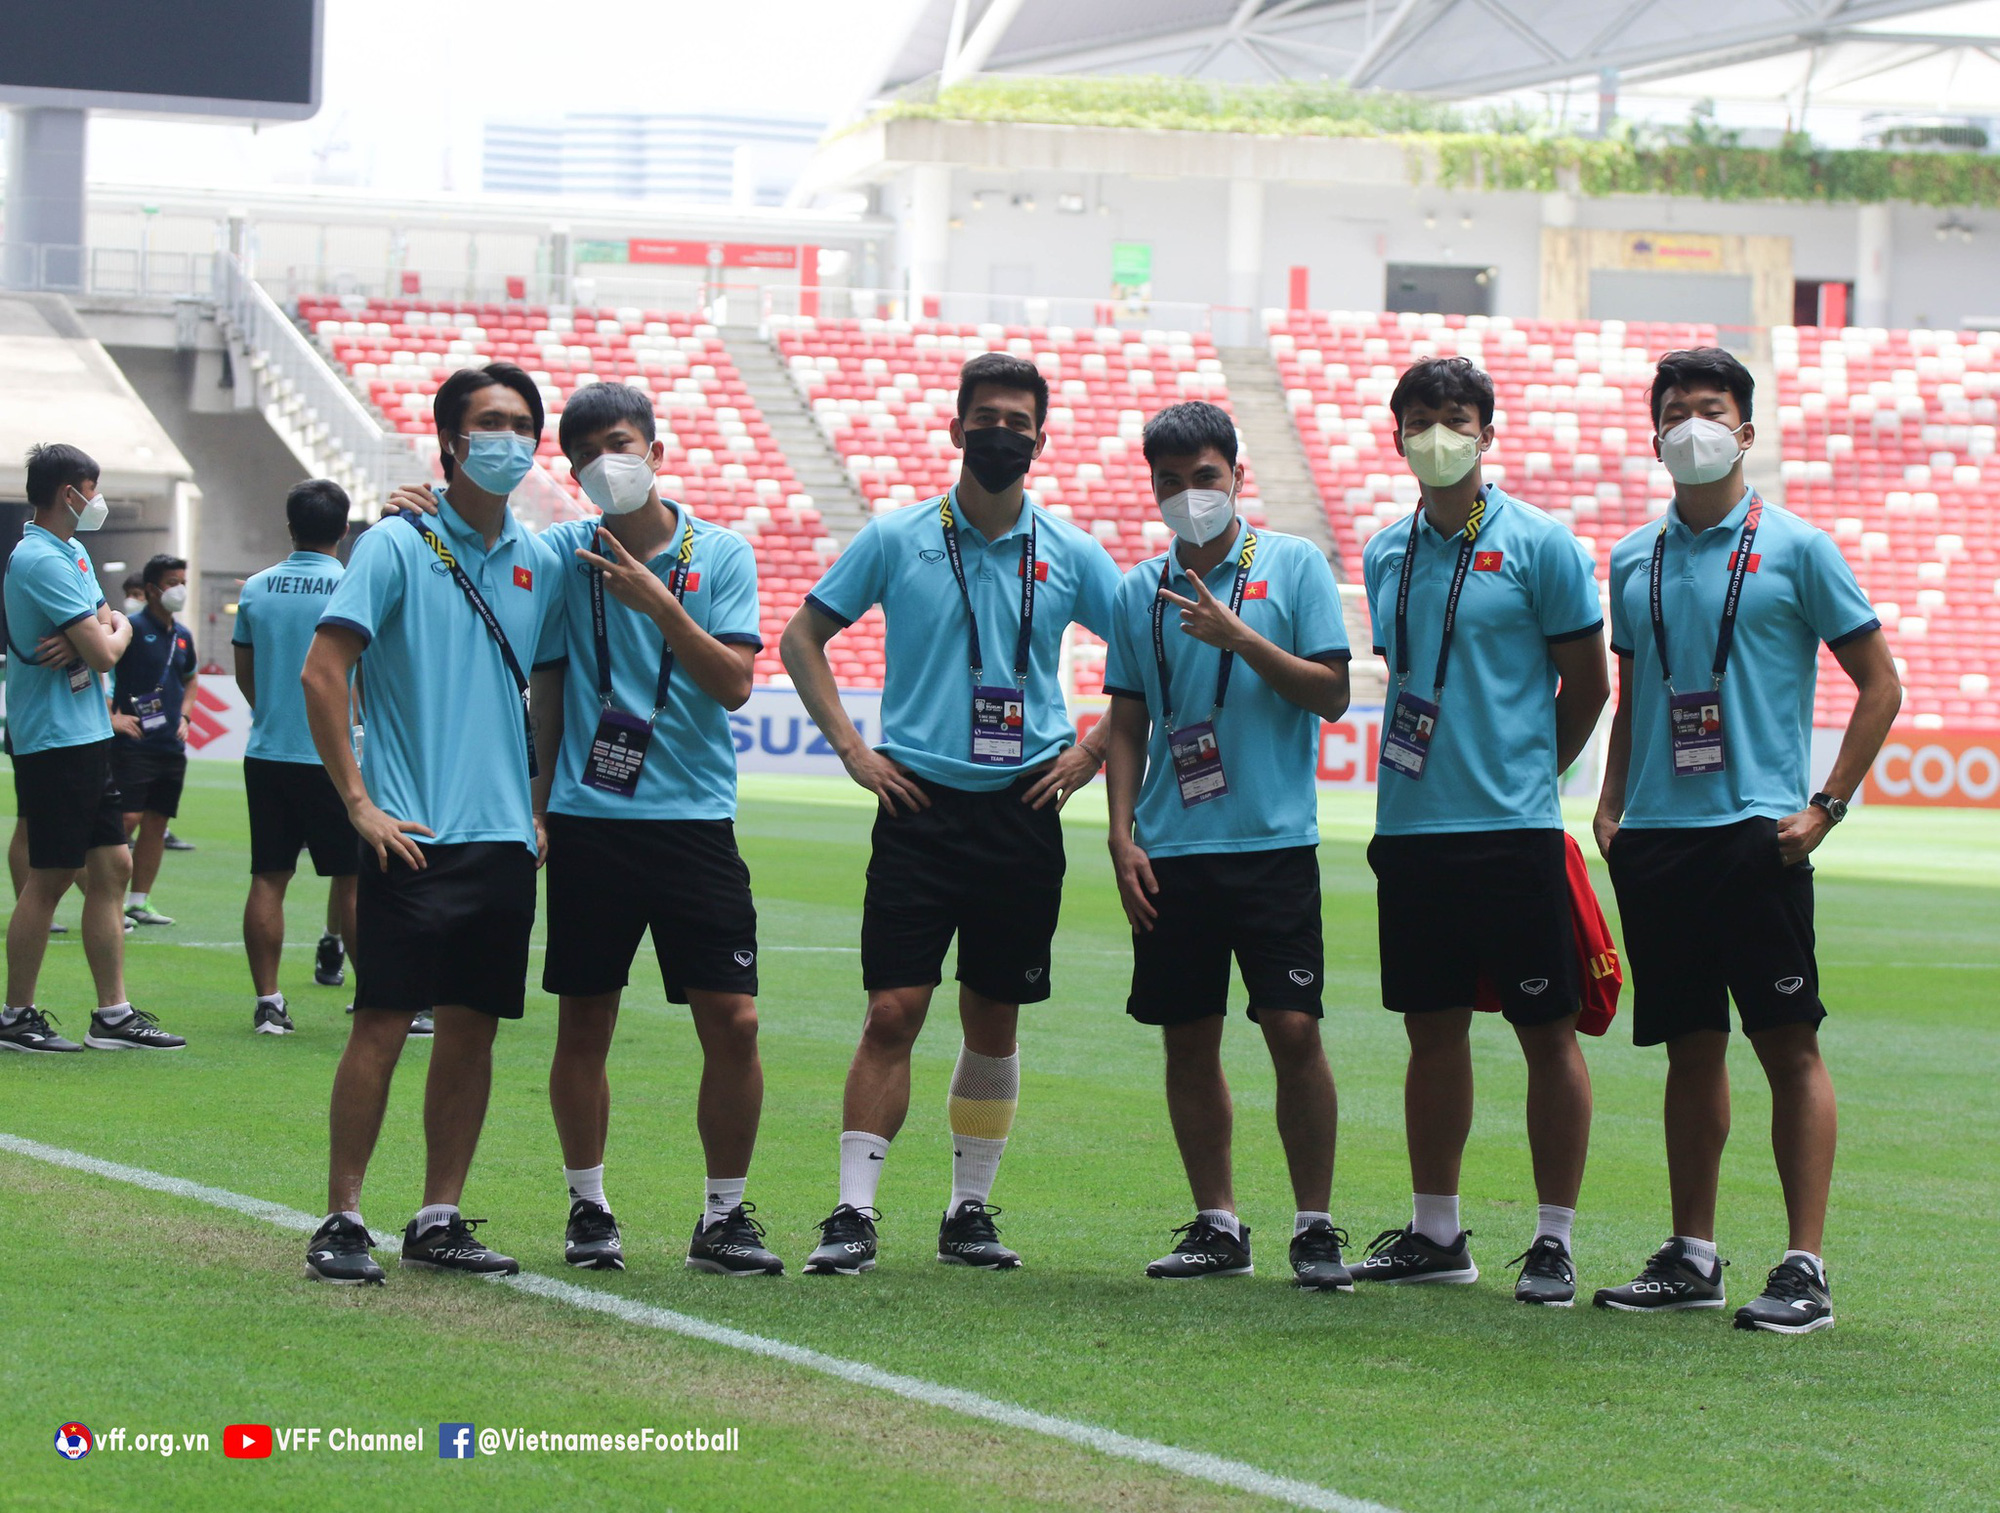 Tuyển Việt Nam đi tham quan SVĐ tổ chức trận bán kết AFF Cup 2020 với Thái Lan giữa trời nắng - Ảnh 9.